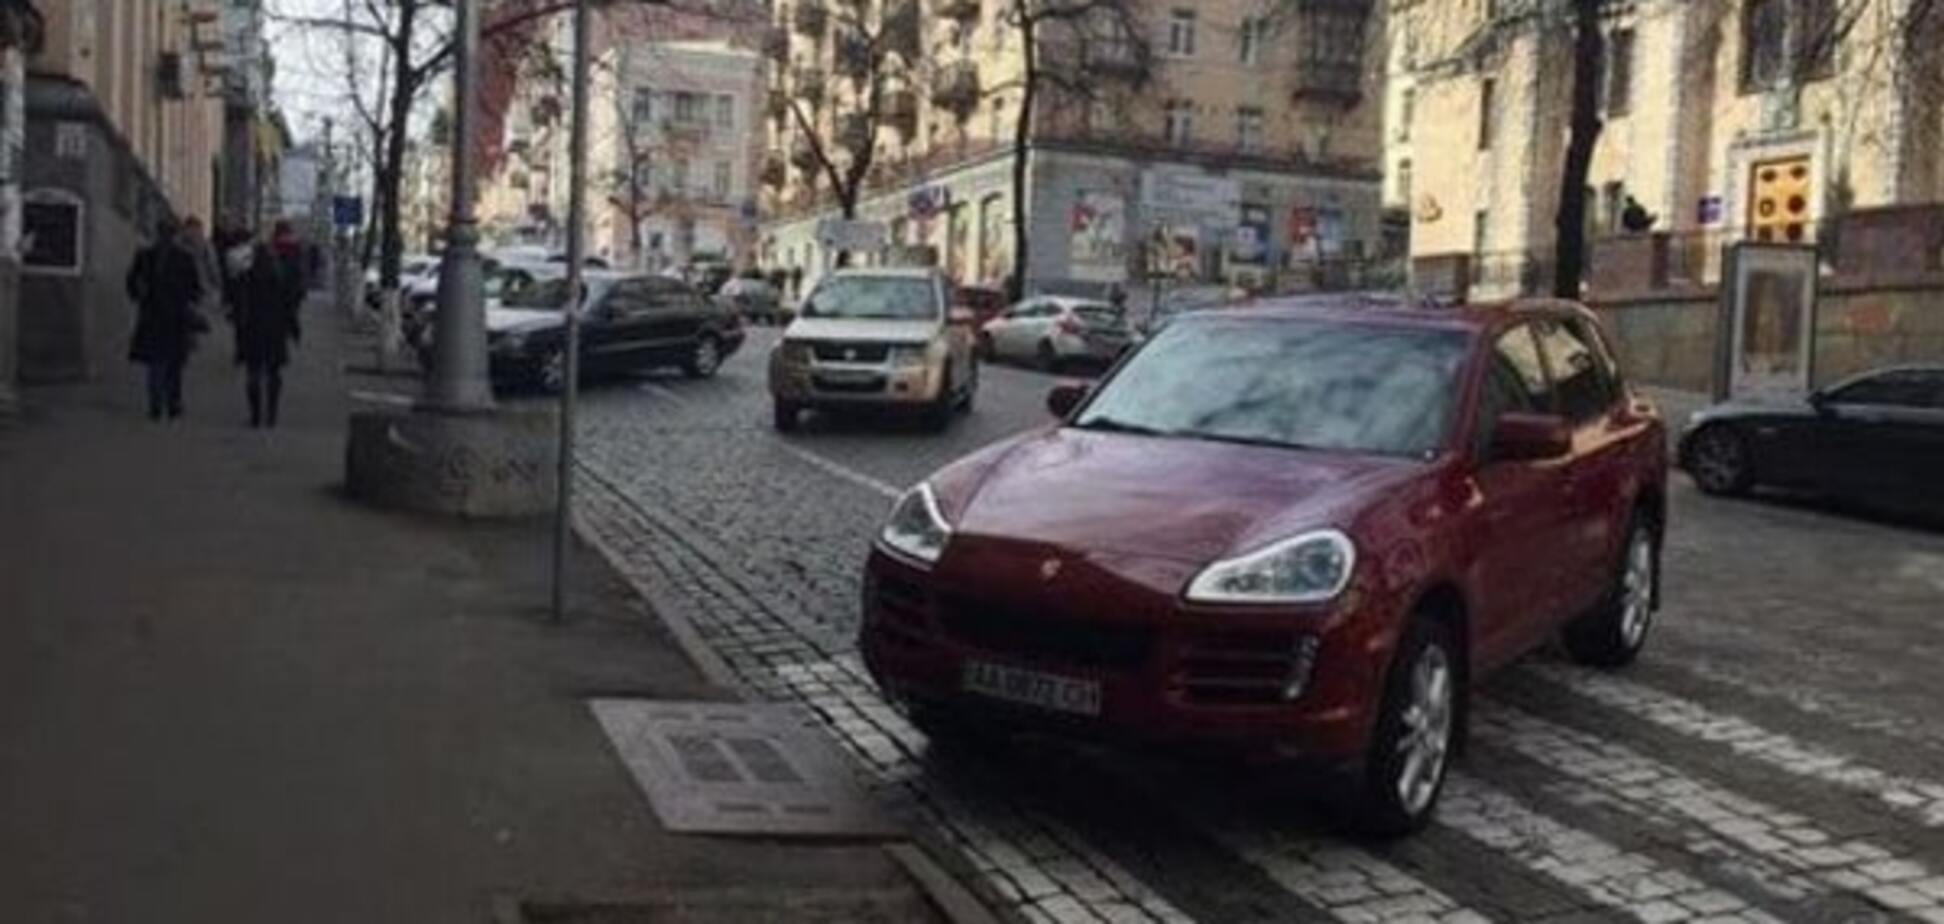 Трепещи, автохам: в Украине создадут единую базу 'героев парковки'